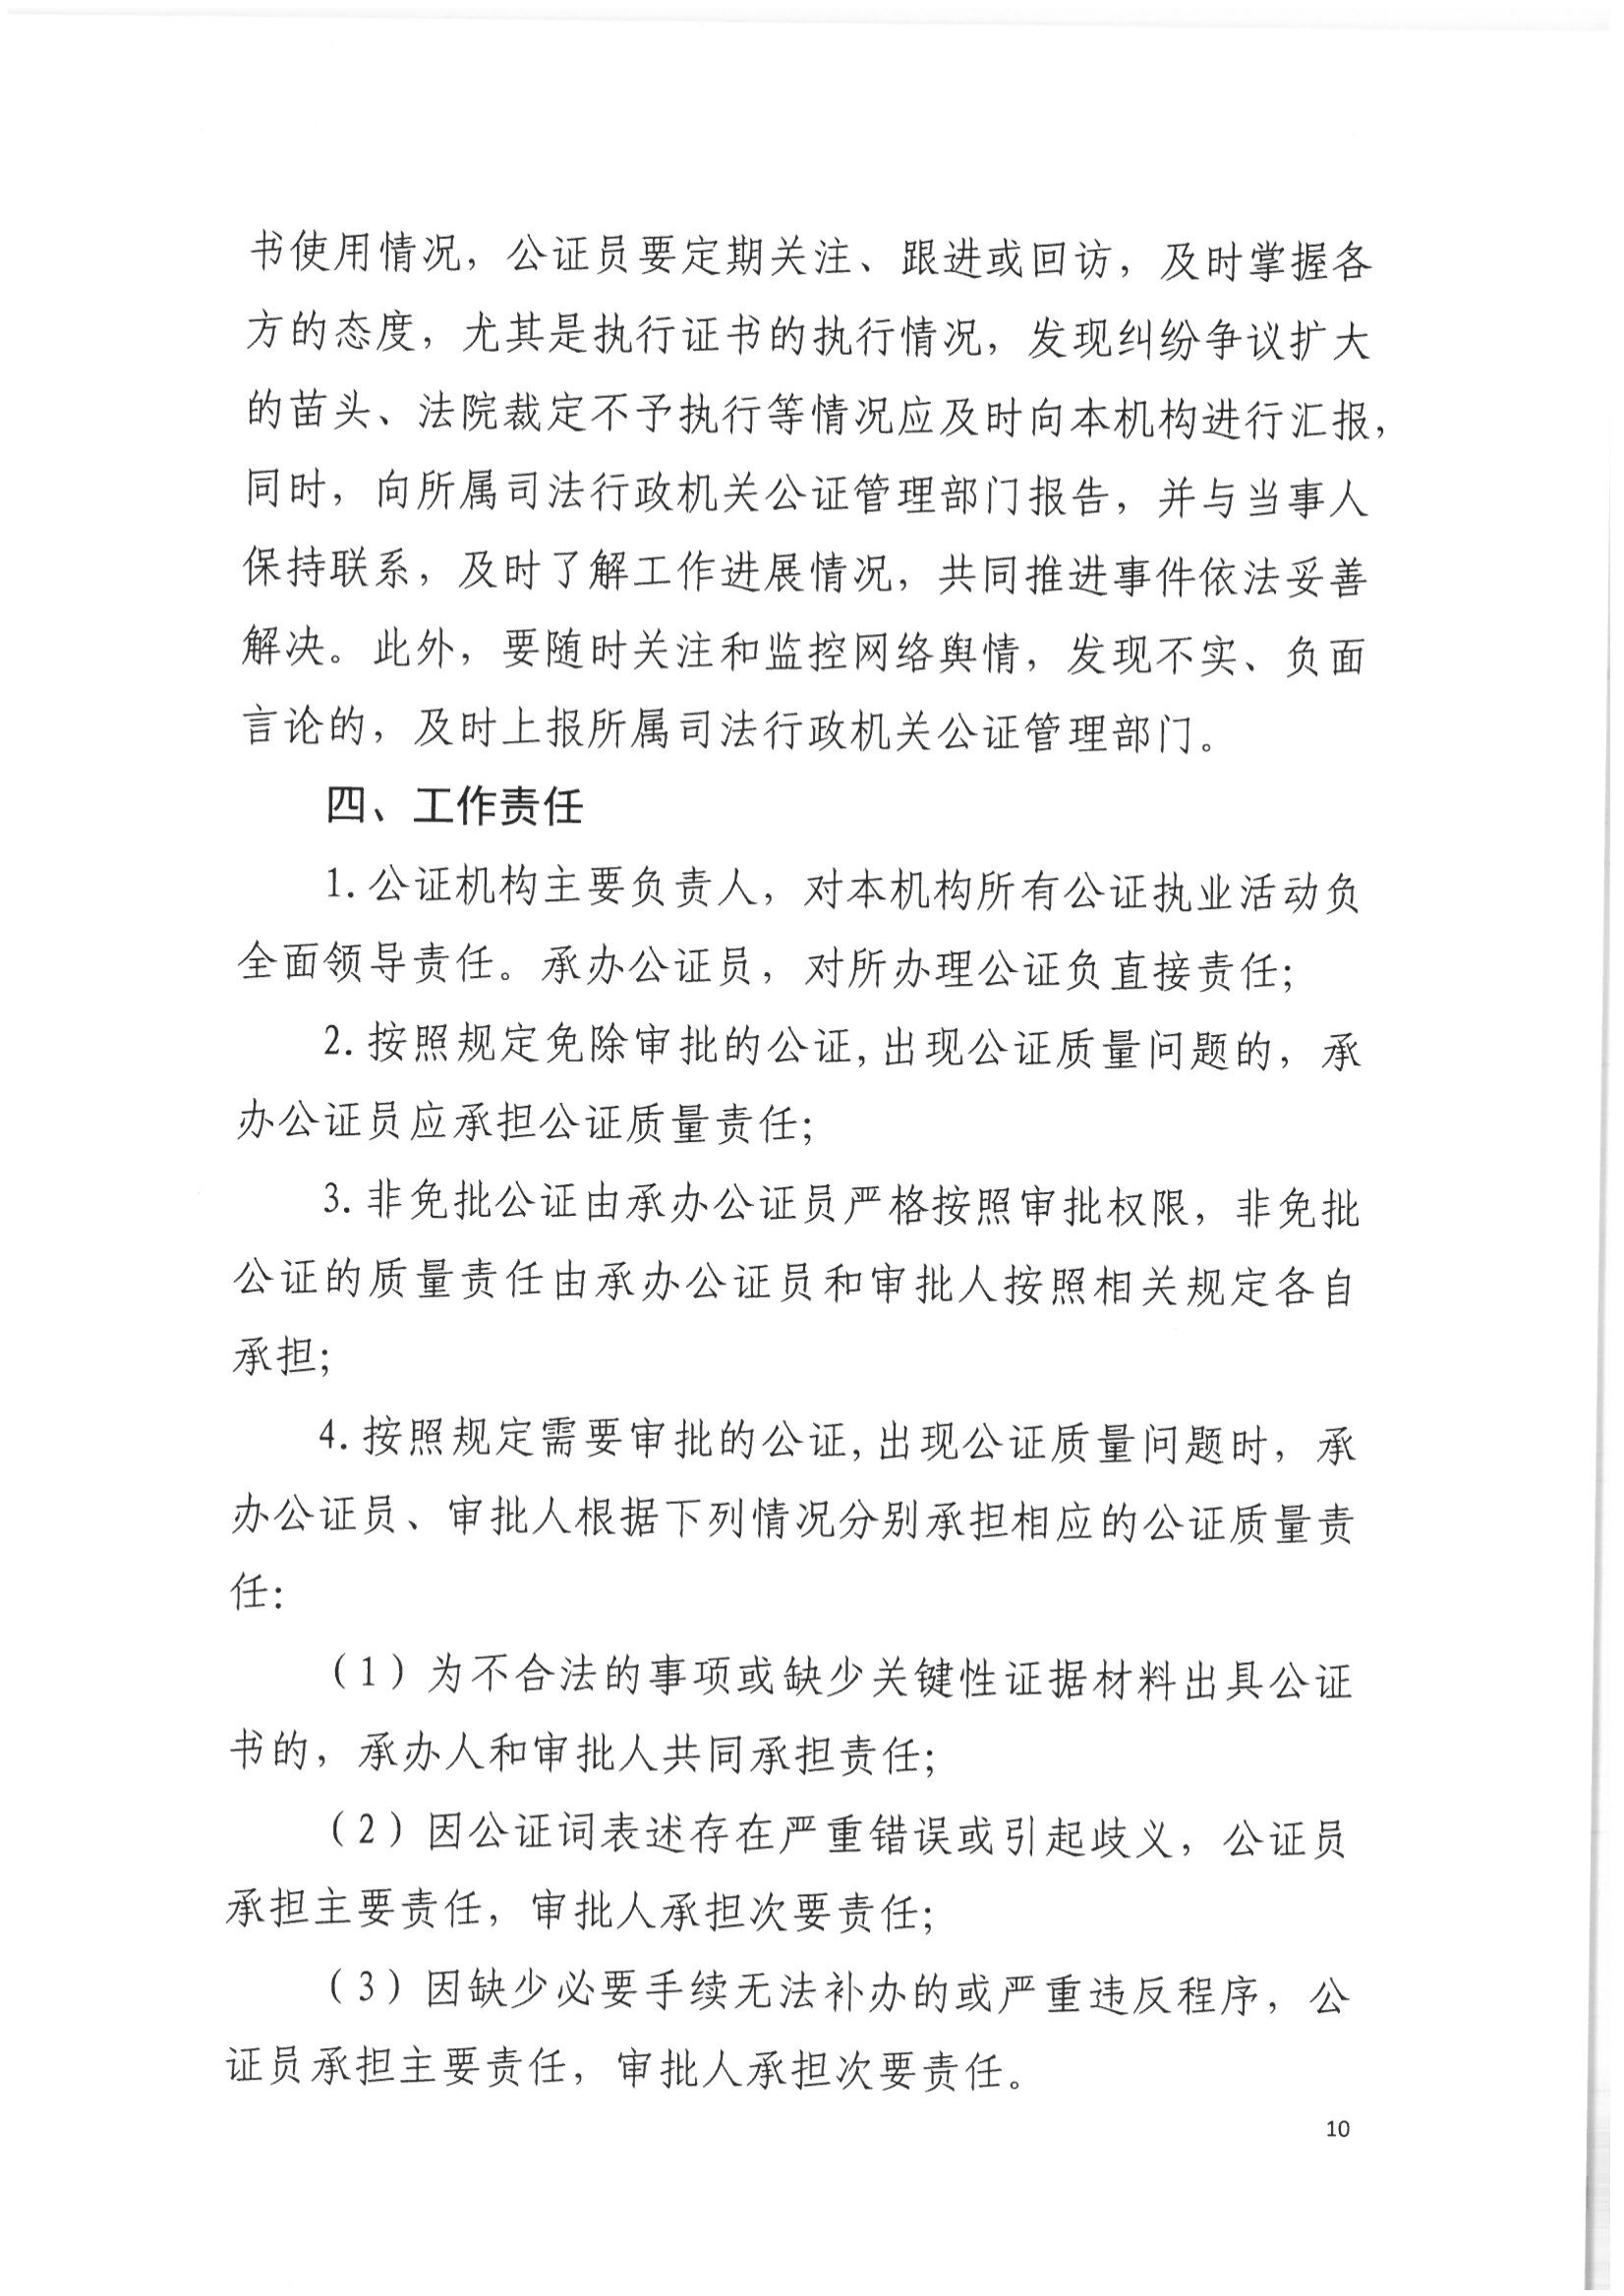 2北京市公证协会关于印发《北京市公证协会关于办理重大、敏感、涉众公证业务的工作指引》的通知(1)_09